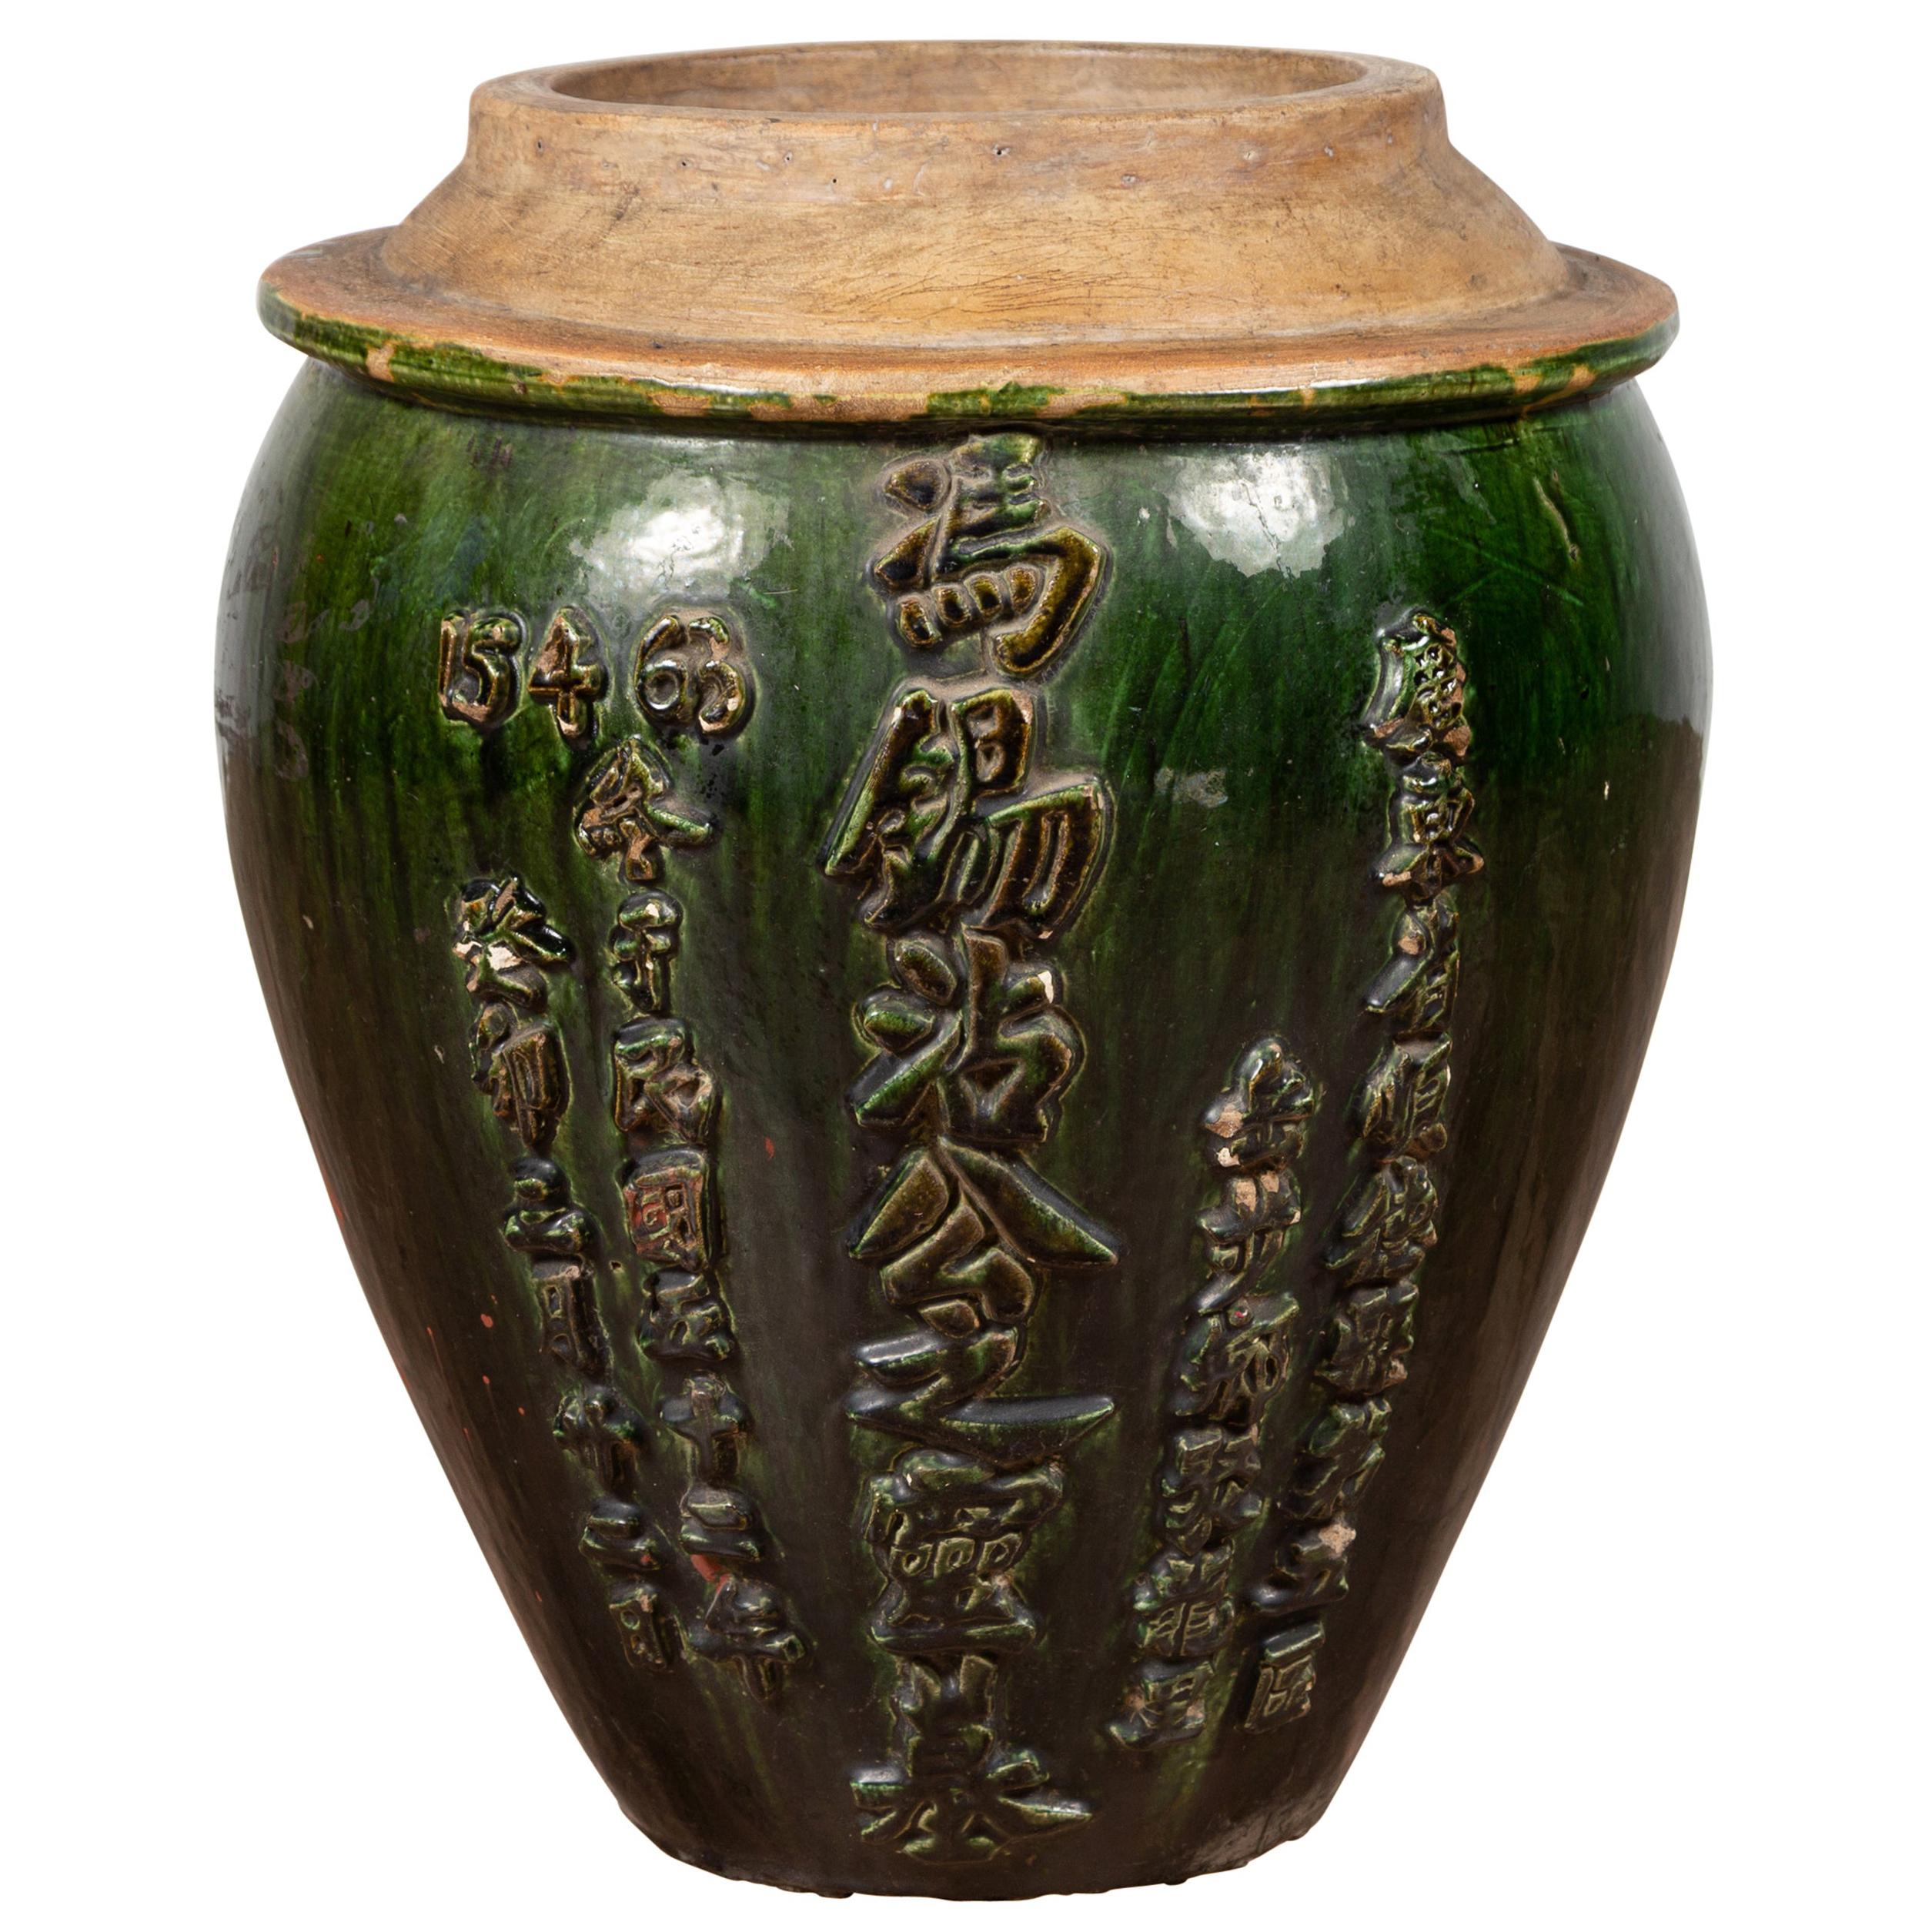 Poterie chinoise contemporaine de cruches à eau émaillée verte avec calligraphie